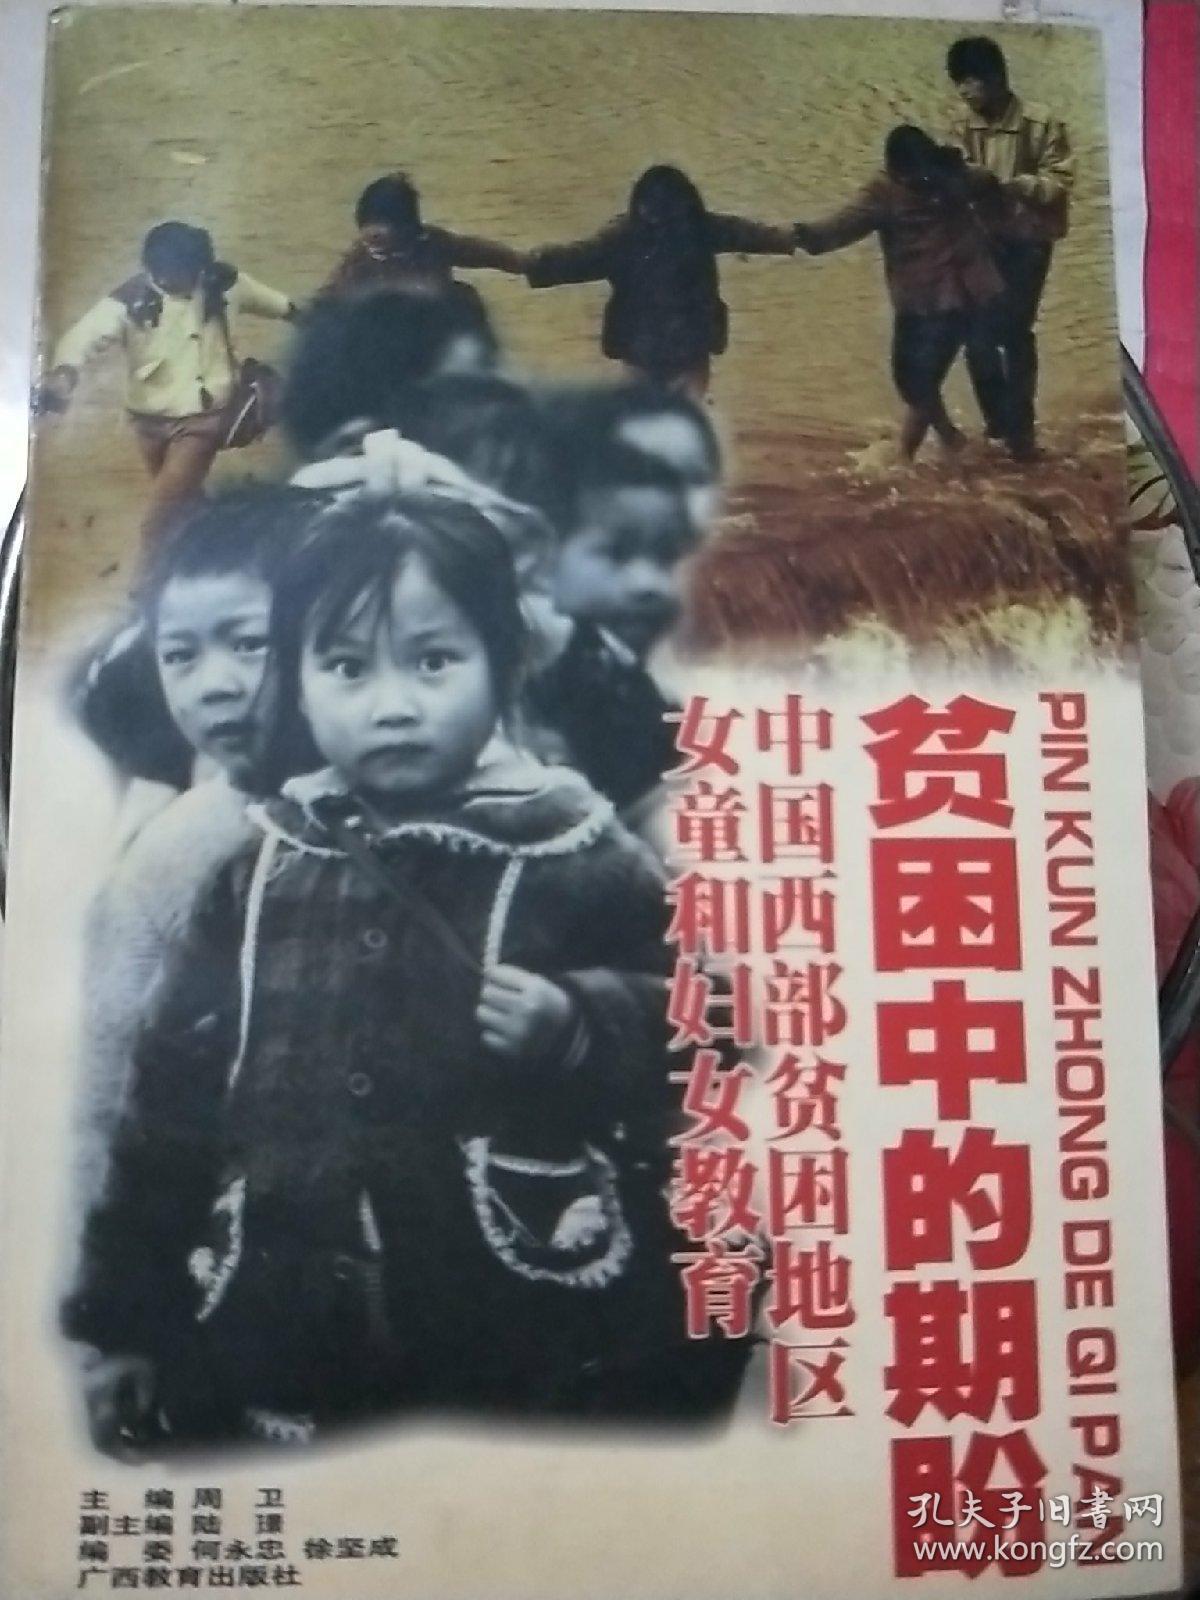 贫困中的期盼:中国西部贫困地区女童和妇女教育